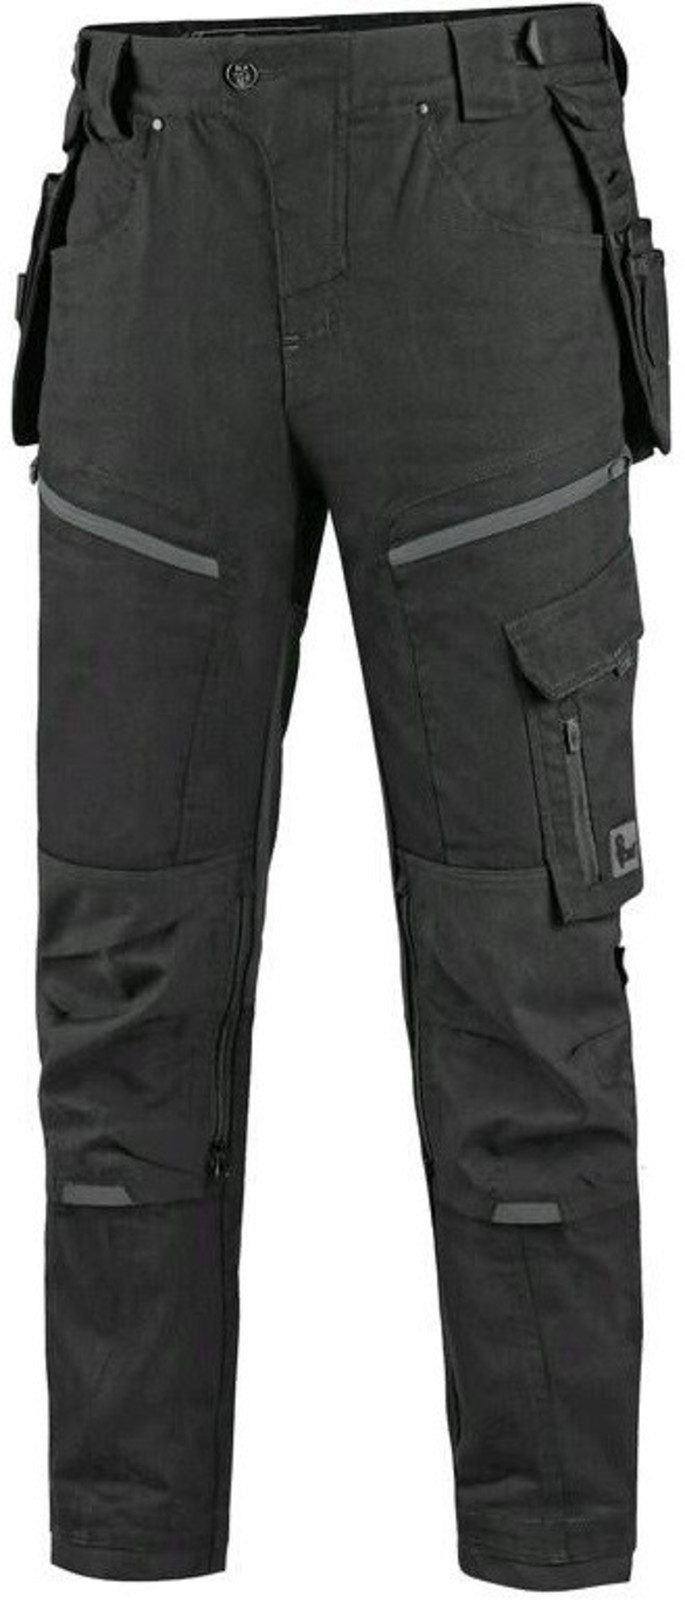 Pánske pracovné nohavice CXS Leonis - veľkosť: 56, farba: čierna/sivá